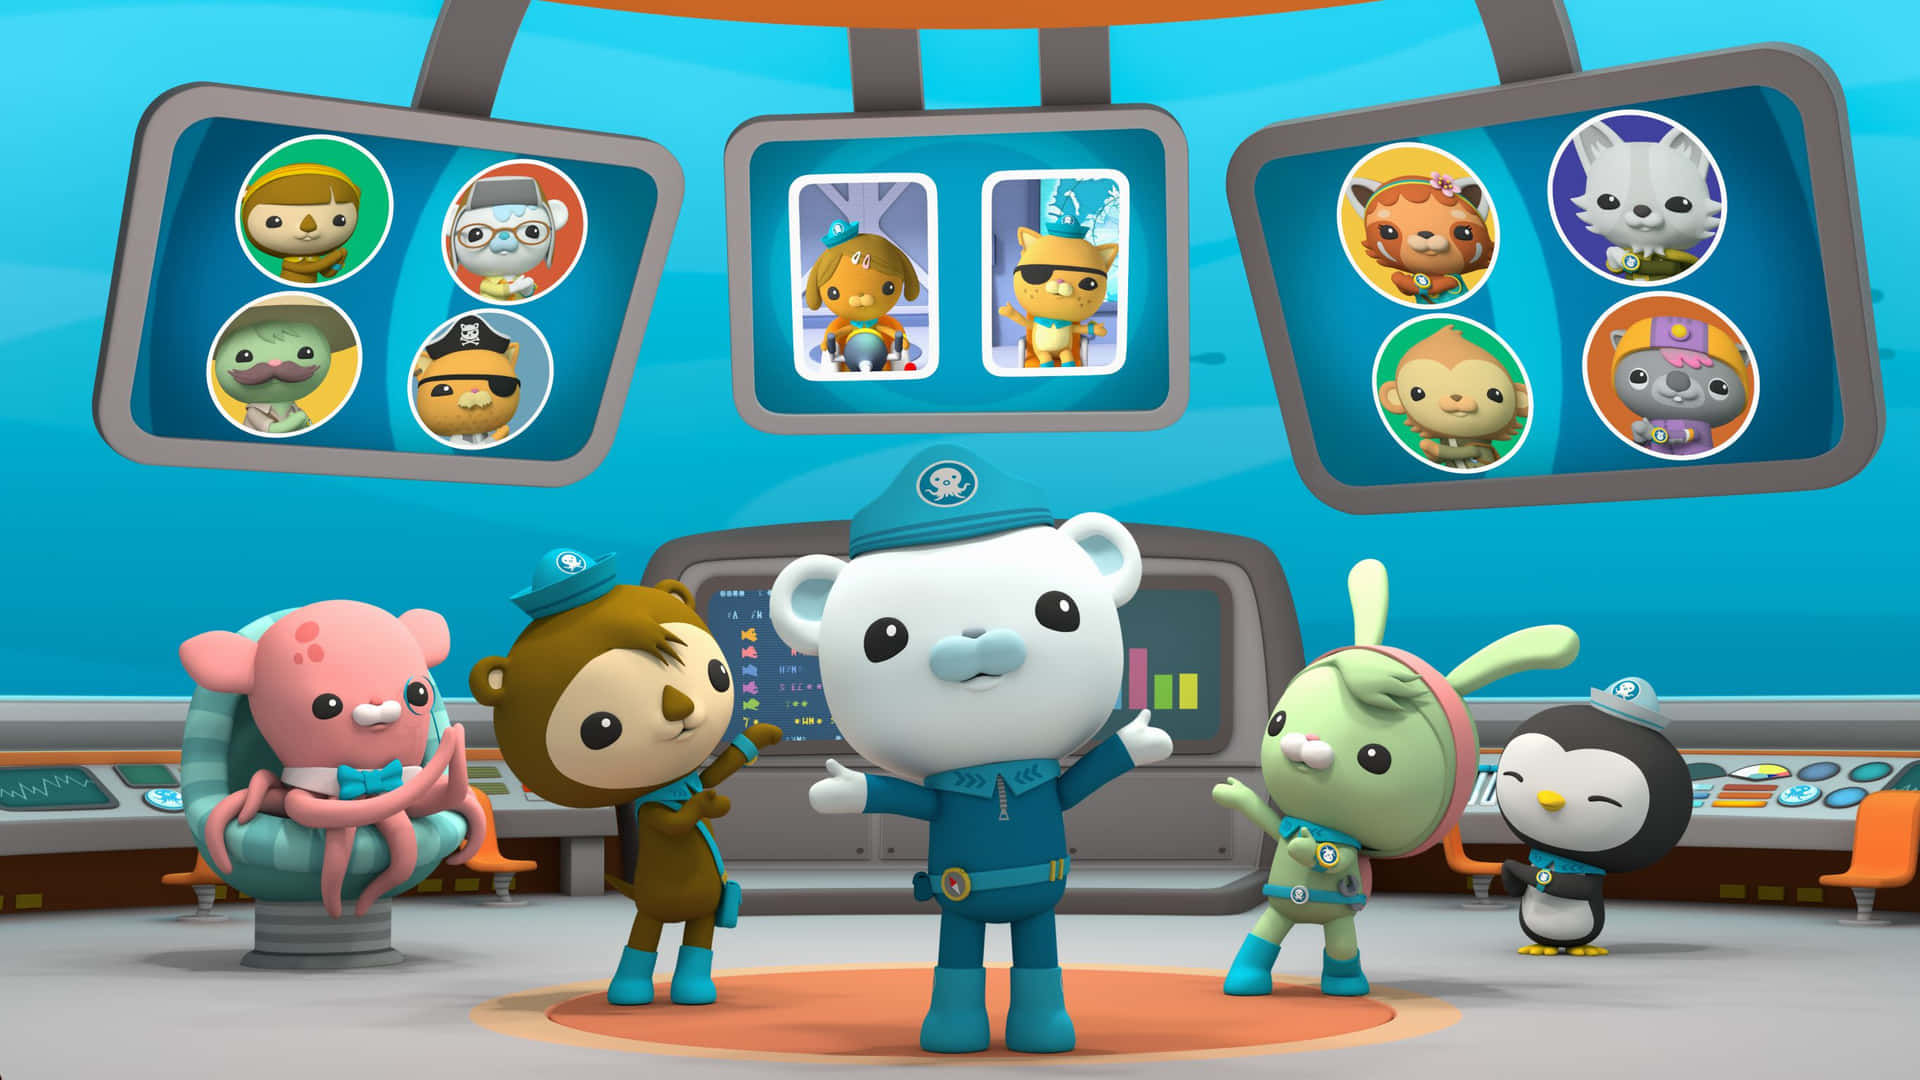 Ungrupo De Personajes De Dibujos Animados En Una Estación Espacial Fondo de pantalla